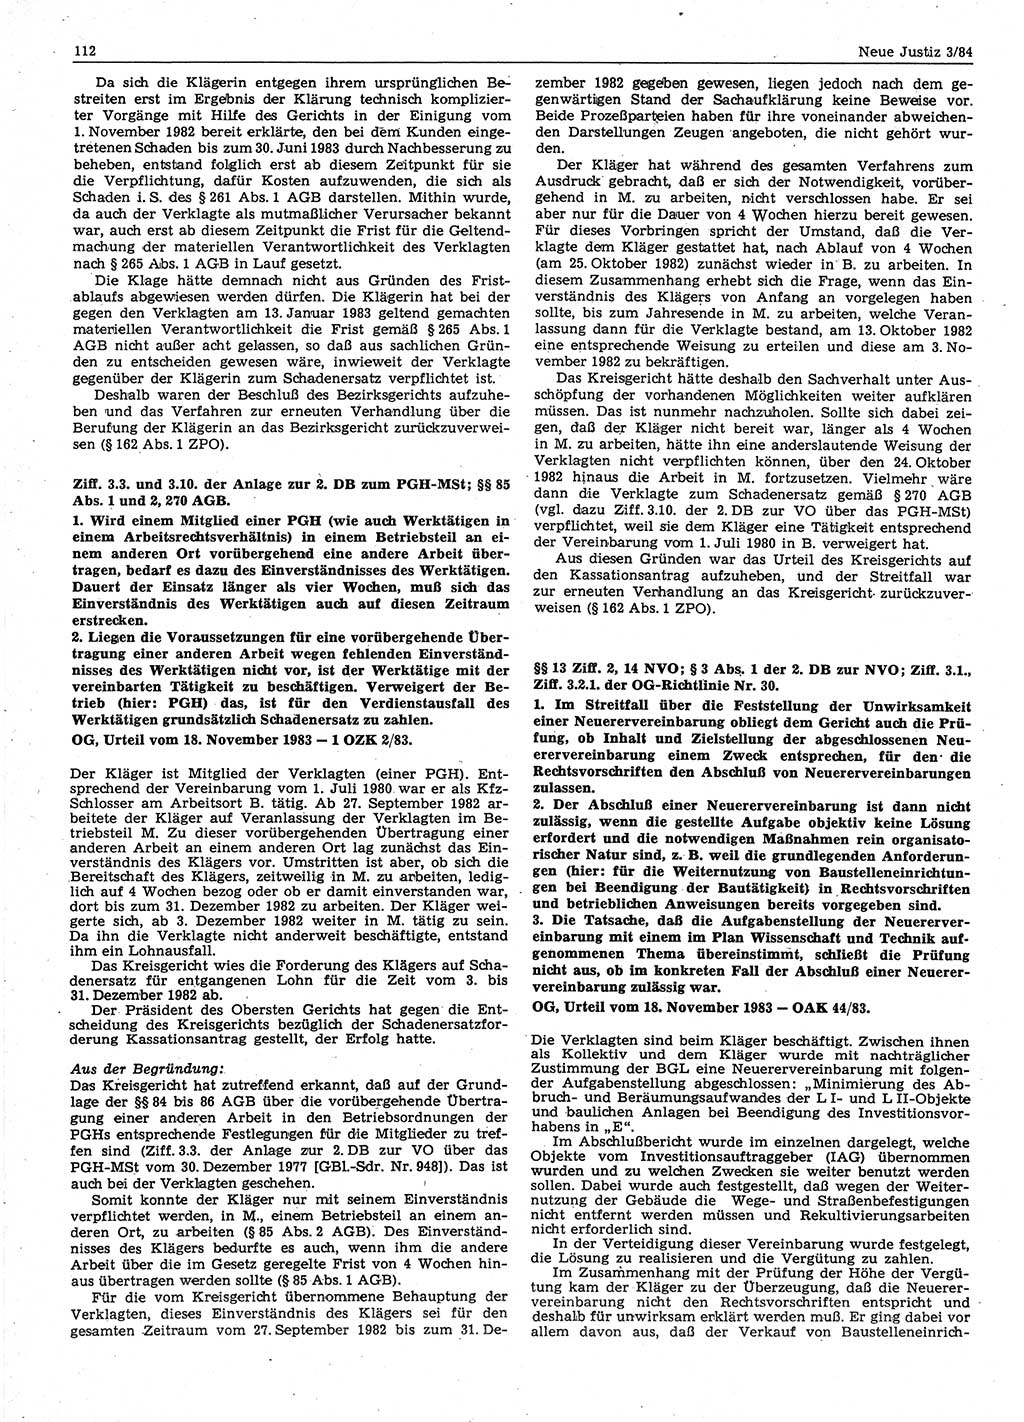 Neue Justiz (NJ), Zeitschrift für sozialistisches Recht und Gesetzlichkeit [Deutsche Demokratische Republik (DDR)], 38. Jahrgang 1984, Seite 112 (NJ DDR 1984, S. 112)